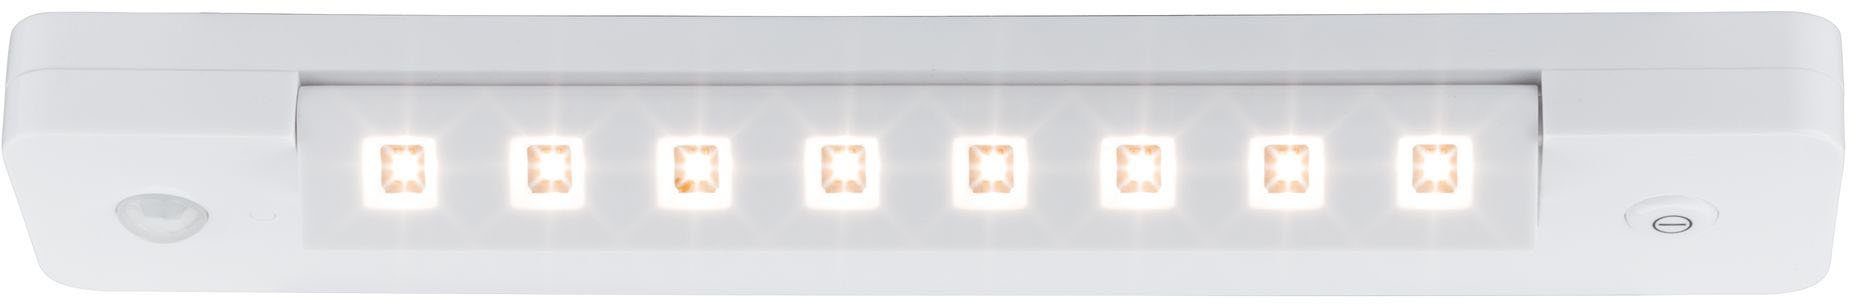 LED Lichtleiste, fest An/Aus/Dimmen&Bewegungsmelder Paulmann integriert, Warmweiß, LED LEDSmartLightbatteriebetrieben+ Schalter